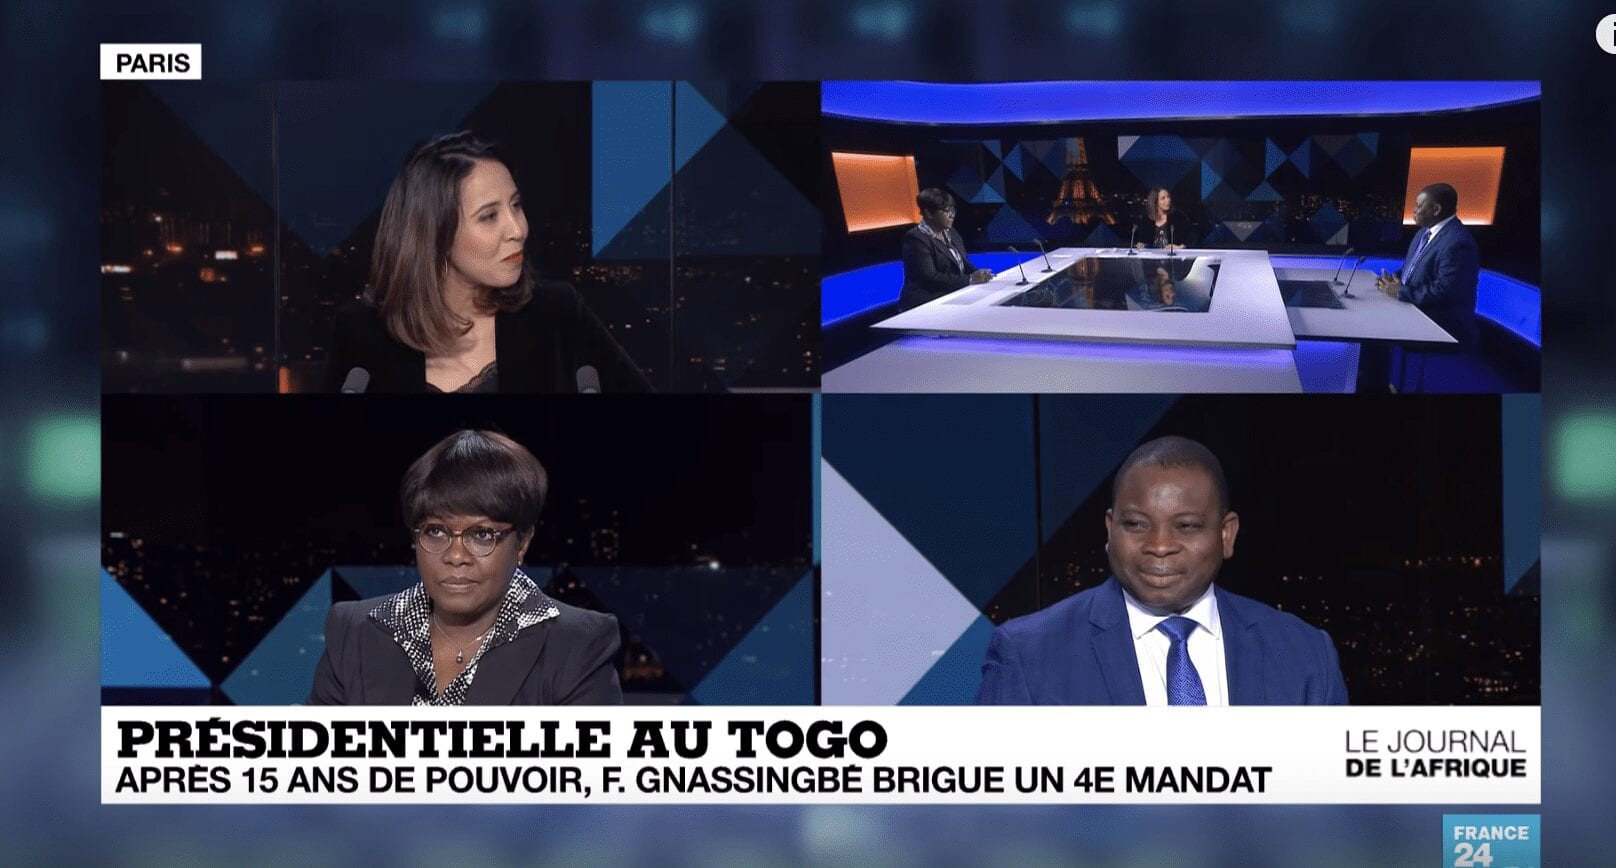 DEBAT: Présidentielle au Togo 2020  après 15 ans de pouvoir, le président sortant brigue un 4e mandat